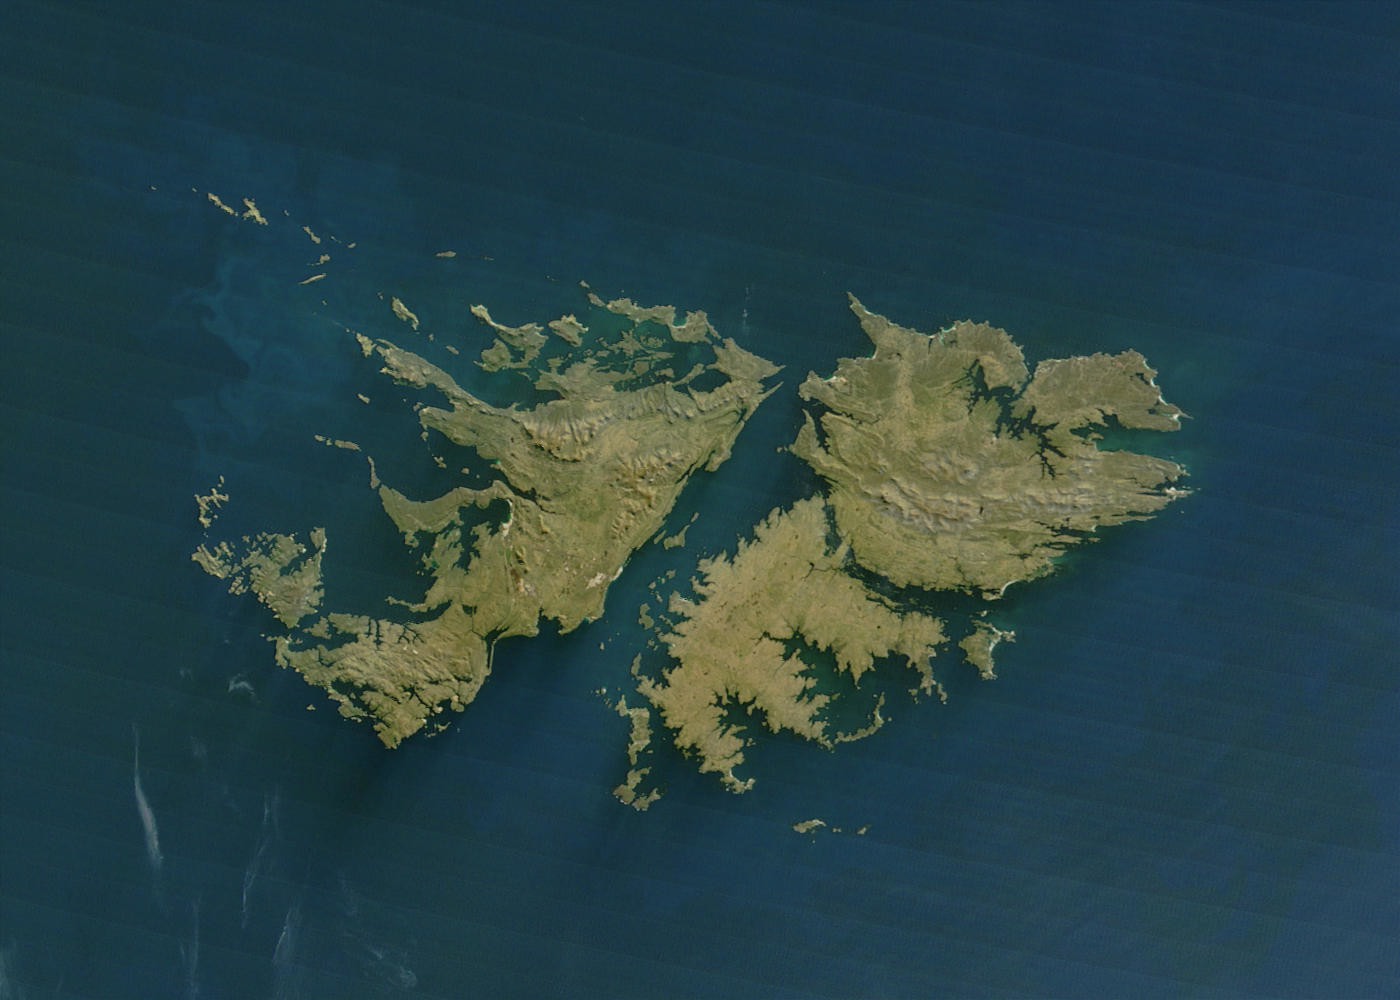 Falklandsko otočje